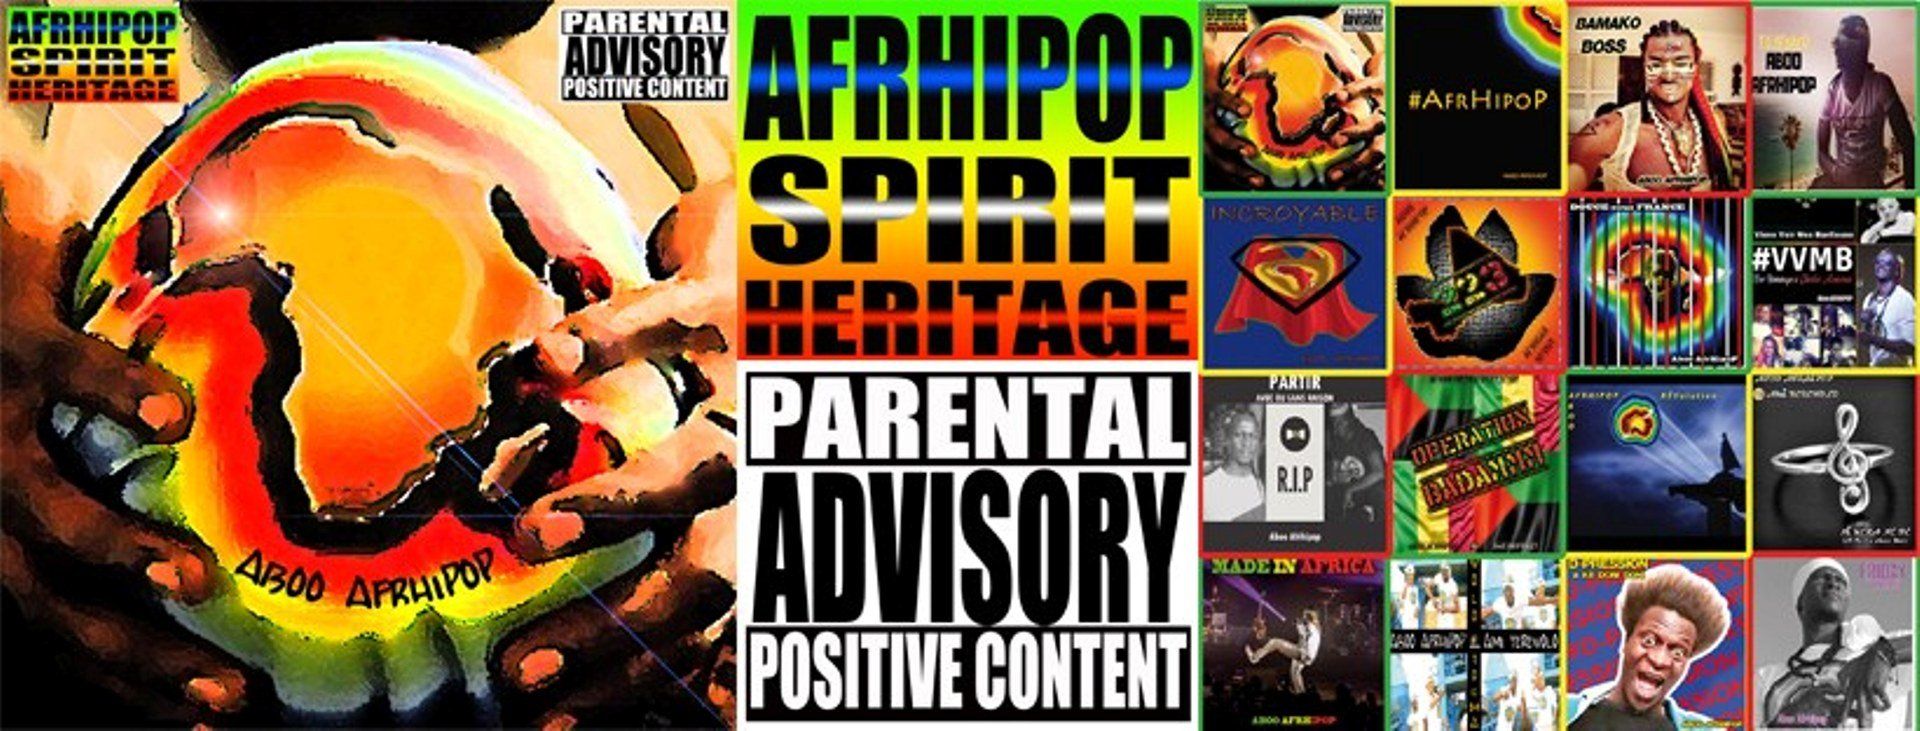 Image de couverture de site Officiel Aboo Afrhipop avec cover de l'album Afrhipop Spirit Heritage